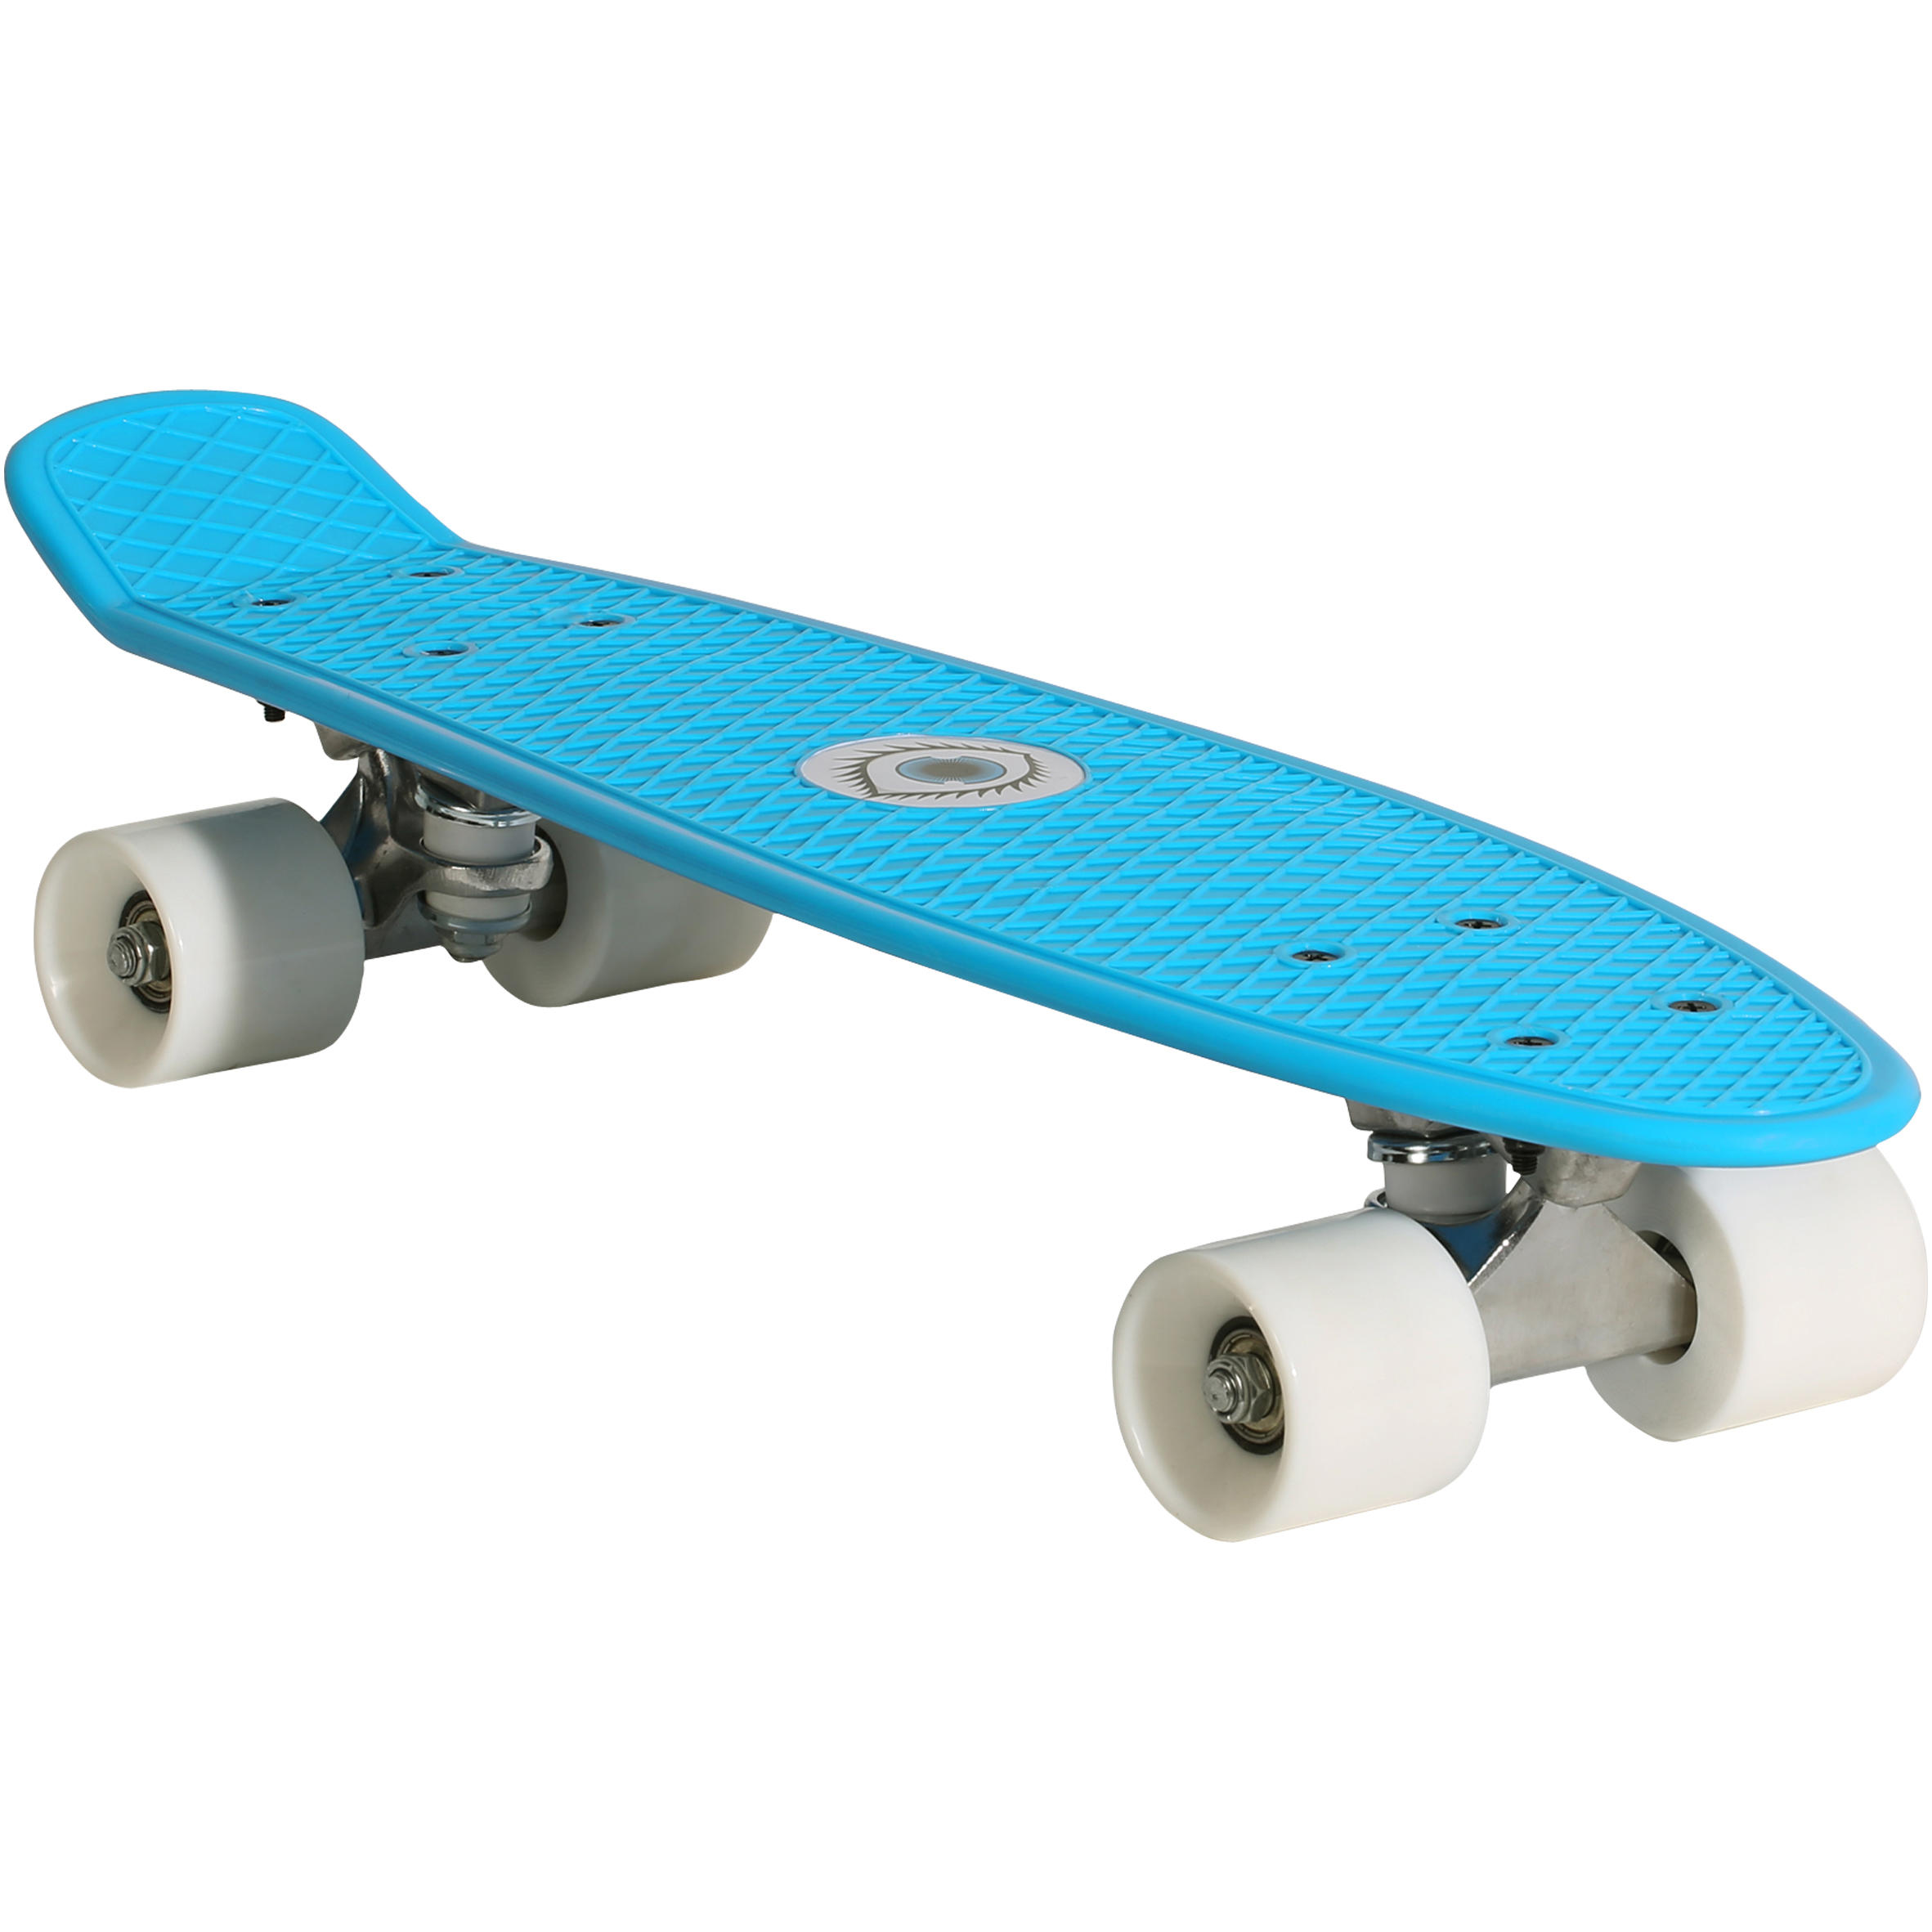 Gehuurd voormalig Ziek persoon OXELO Miniskateboard voor kinderen plastic blauw PLAY 500 | Decathlon